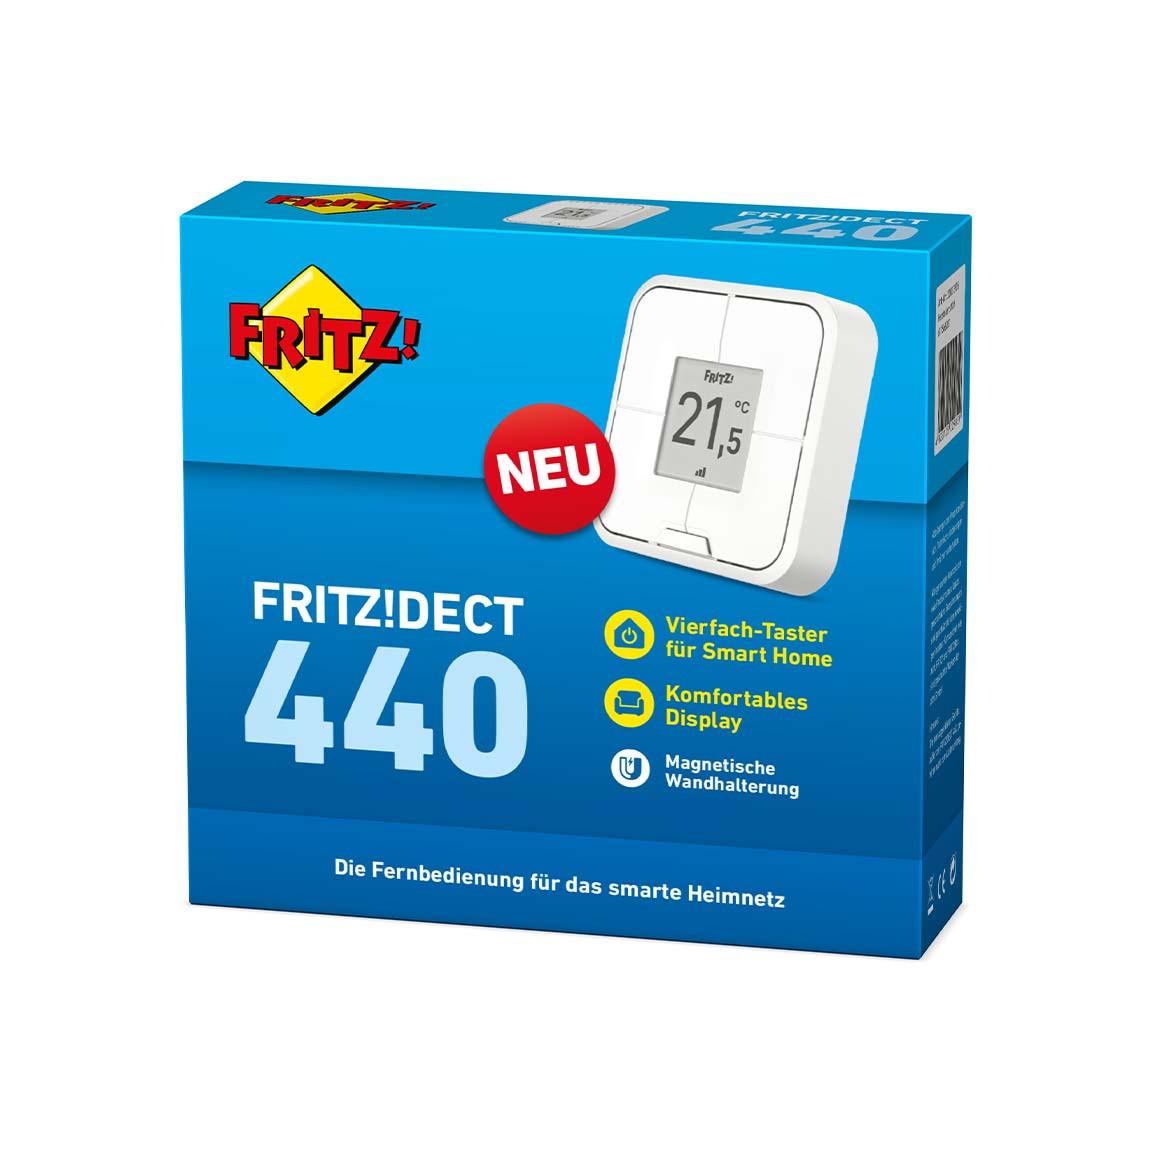 AVM FRITZ!DECT 440 - Vierfach-Taster Verpackung